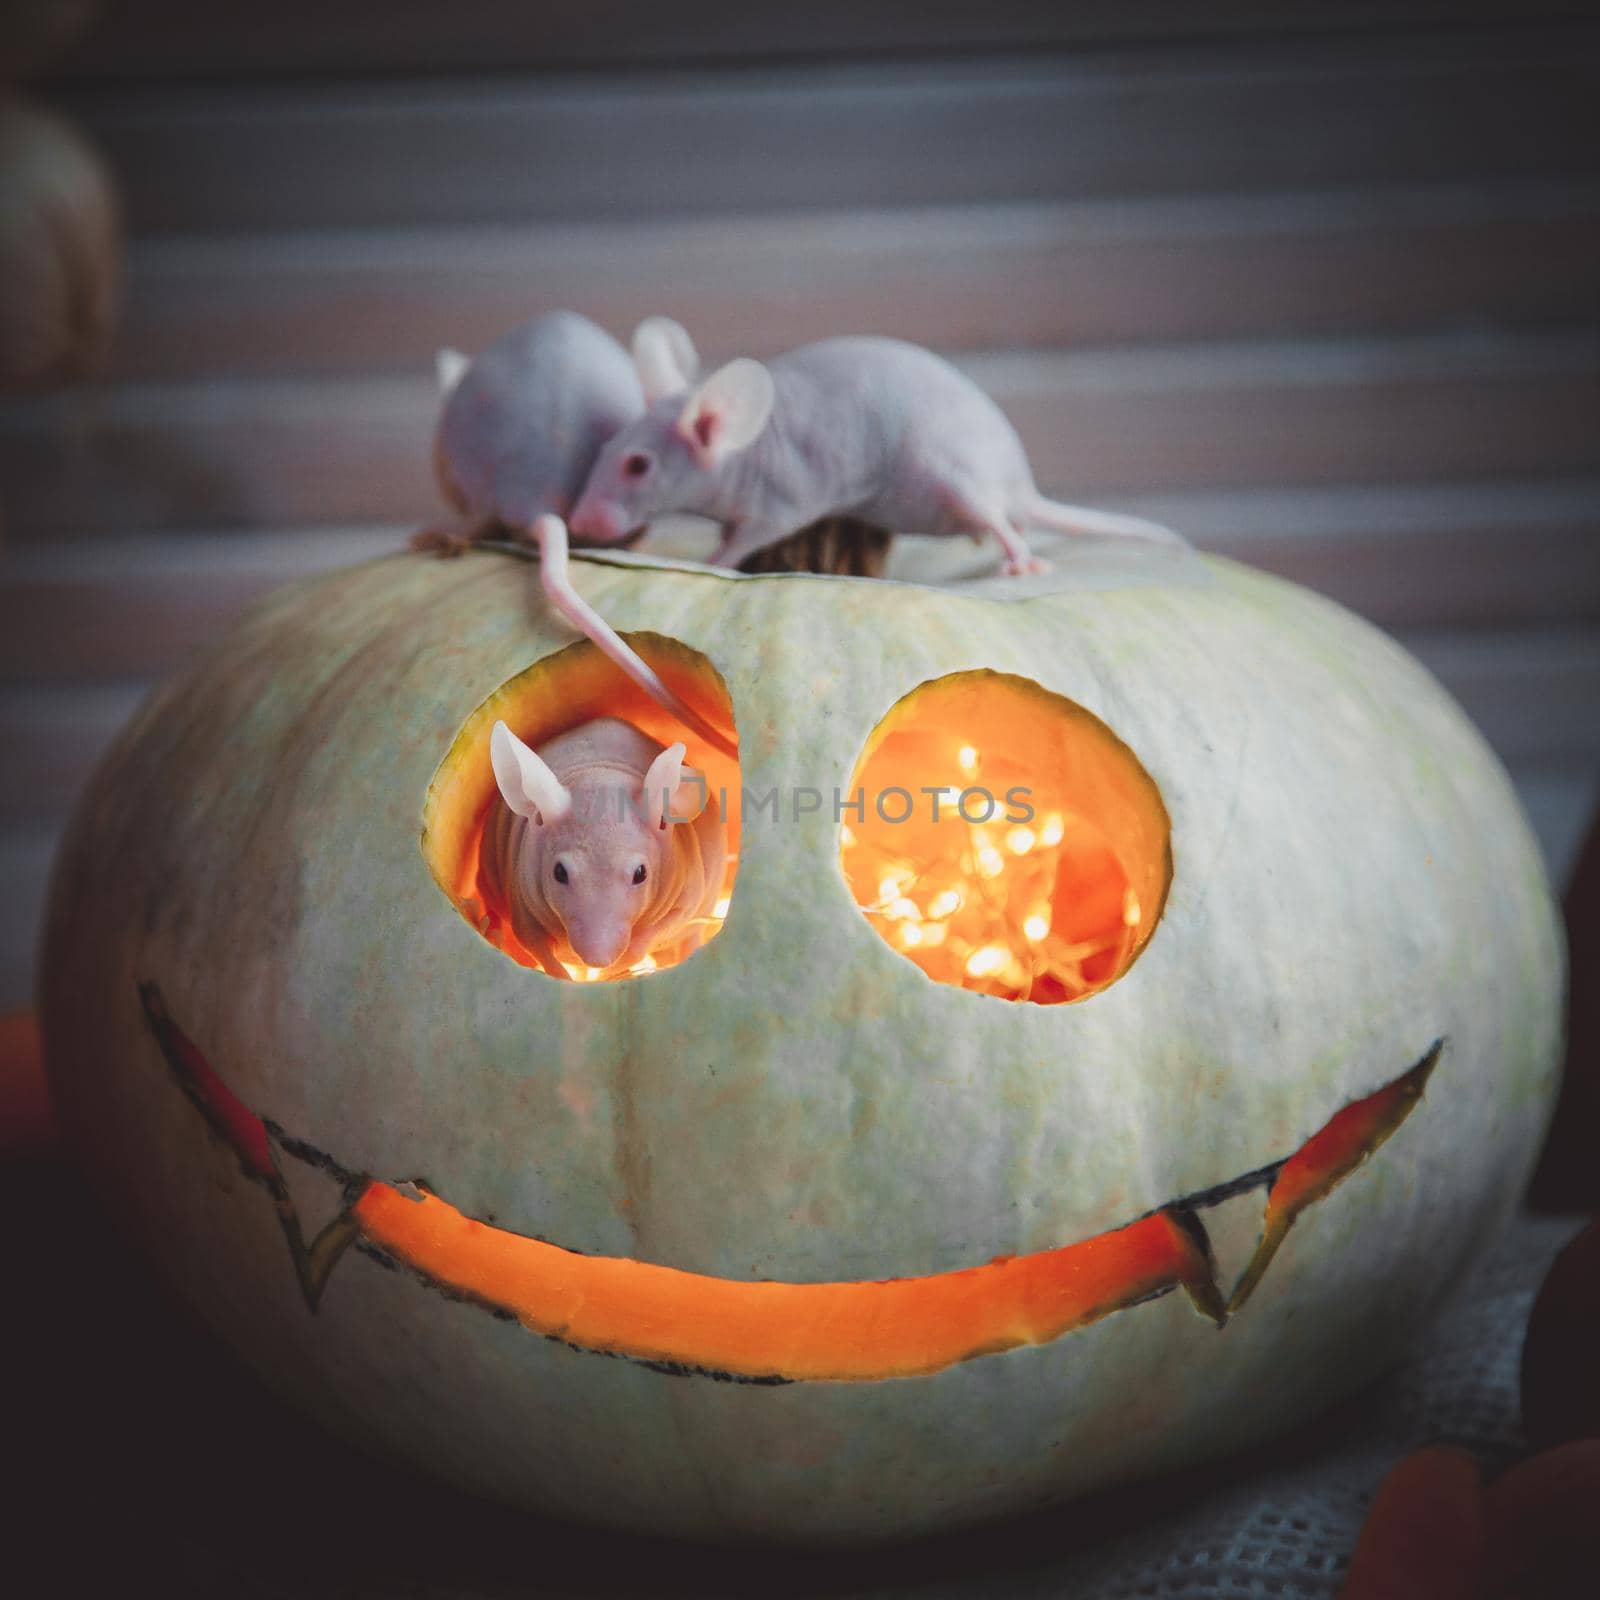 Hairless albino mice, Mus musculus, with Haloween pumpkin